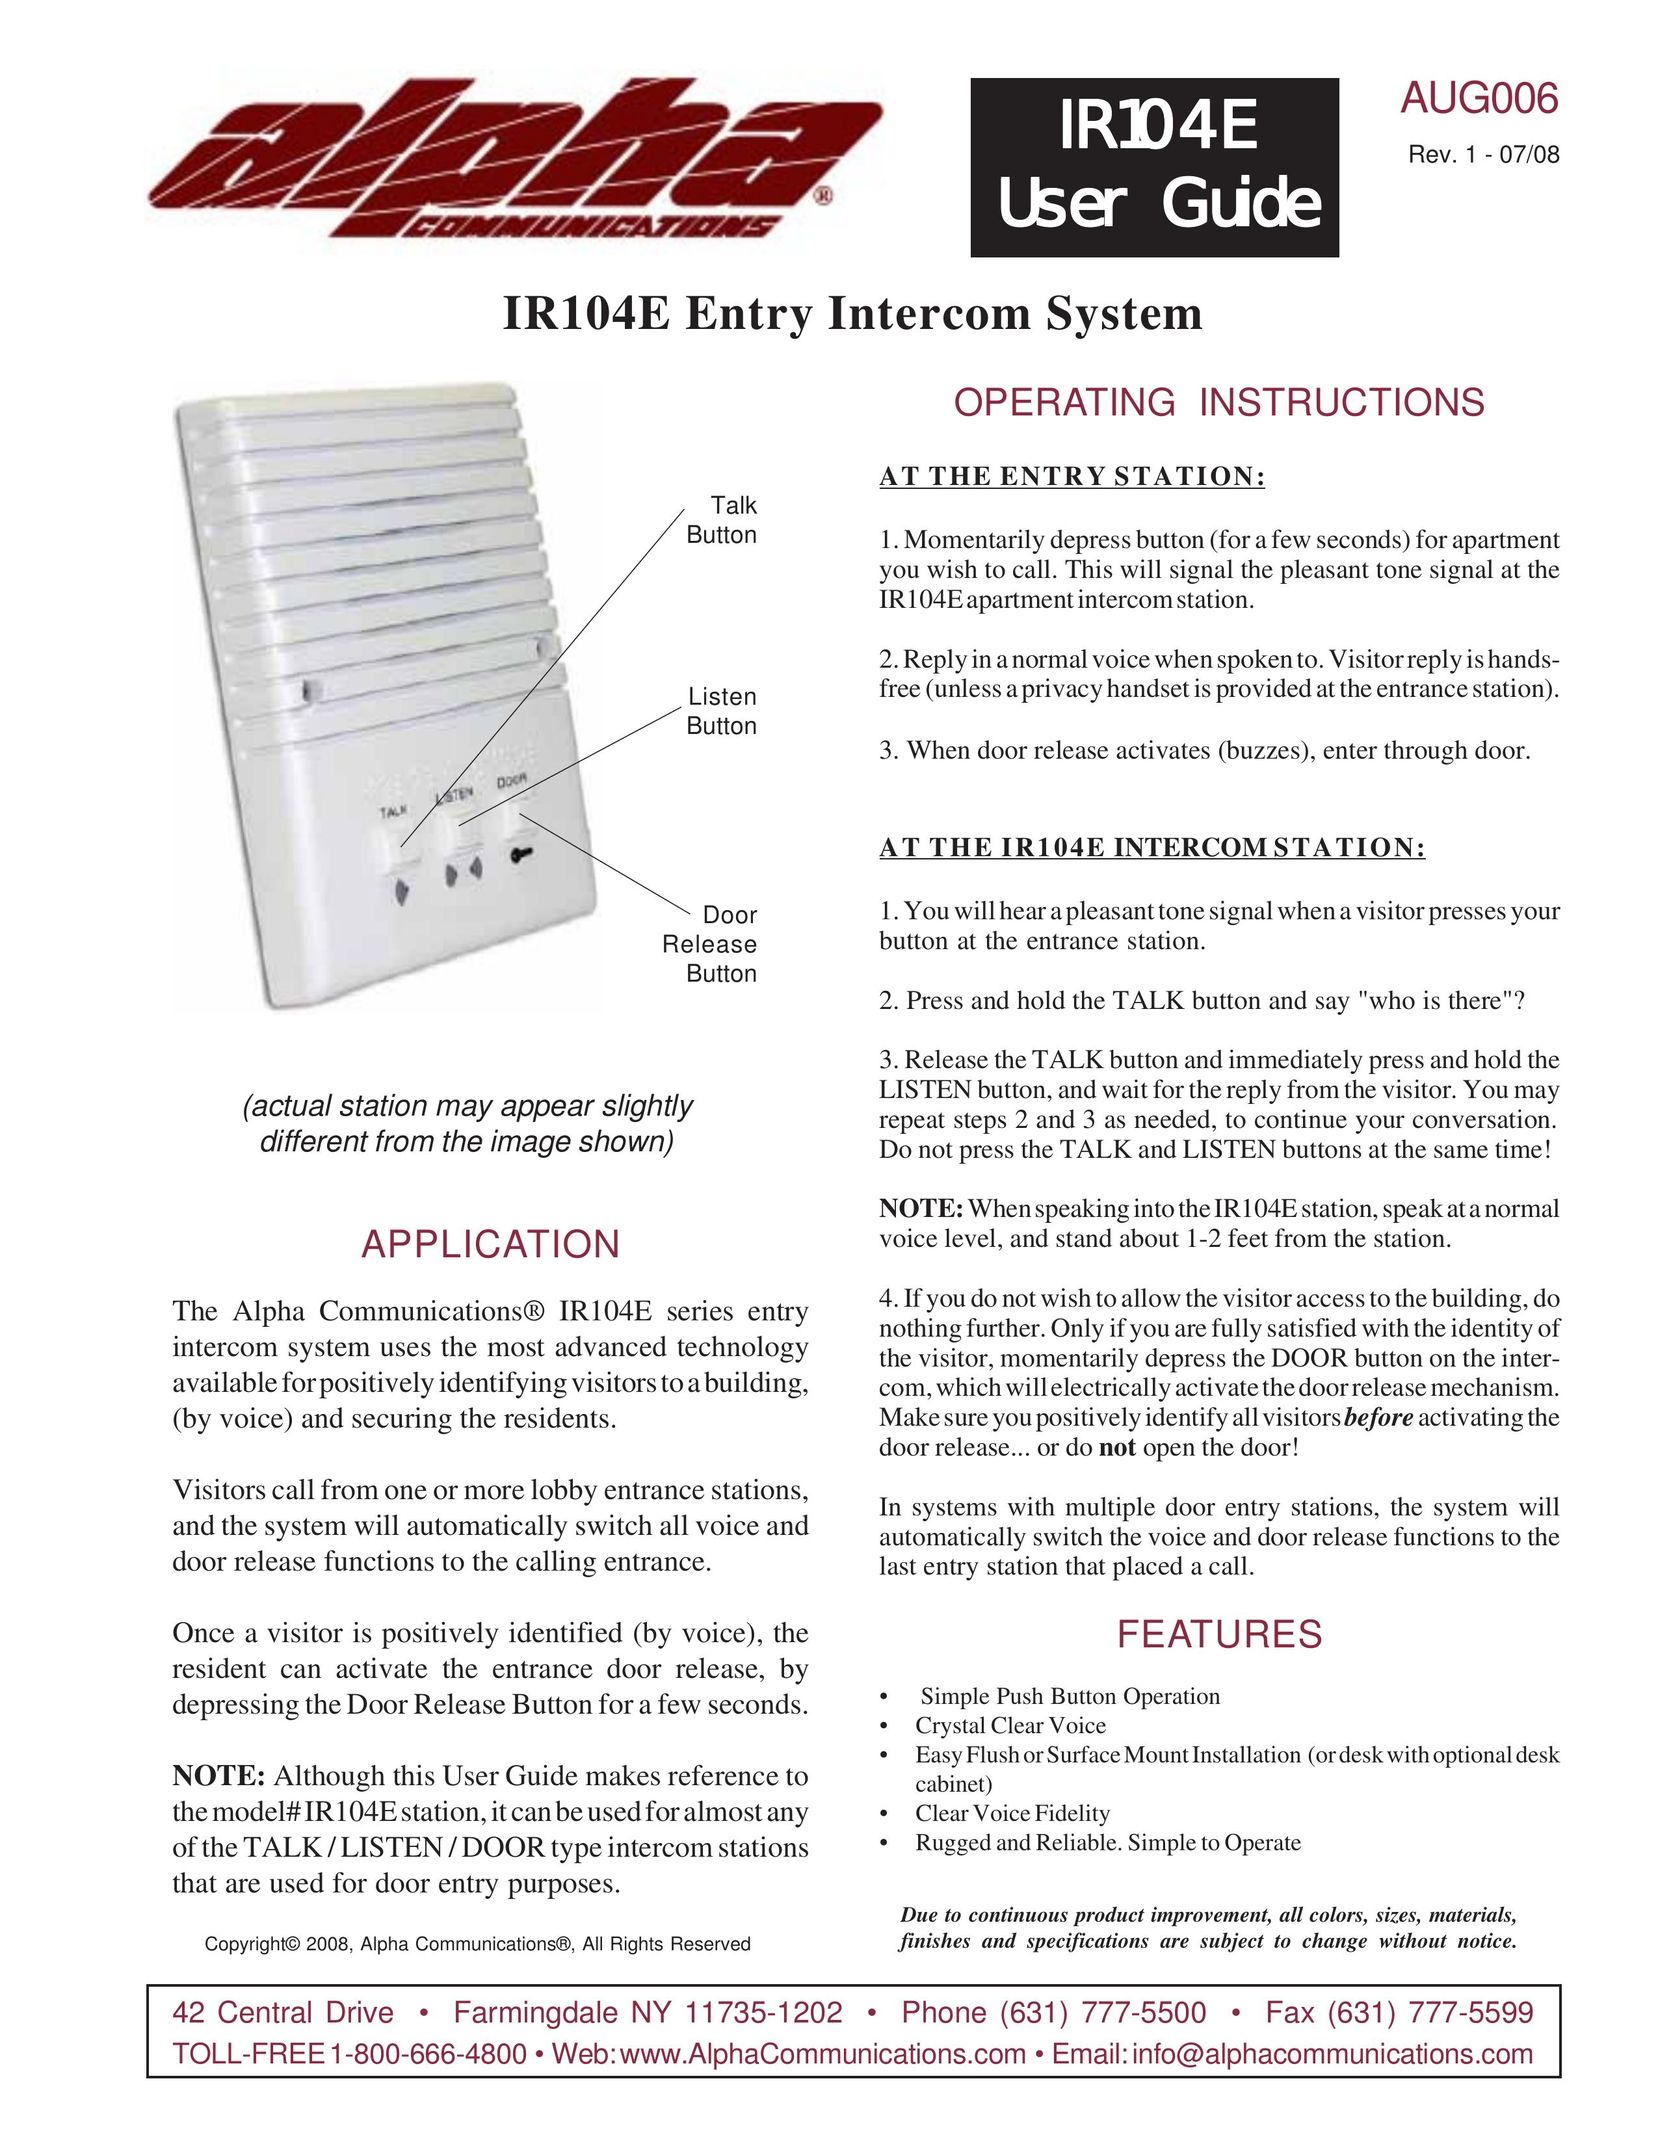 Alpha Tool.Com.HK Limited IR104E Series Intercom System User Manual